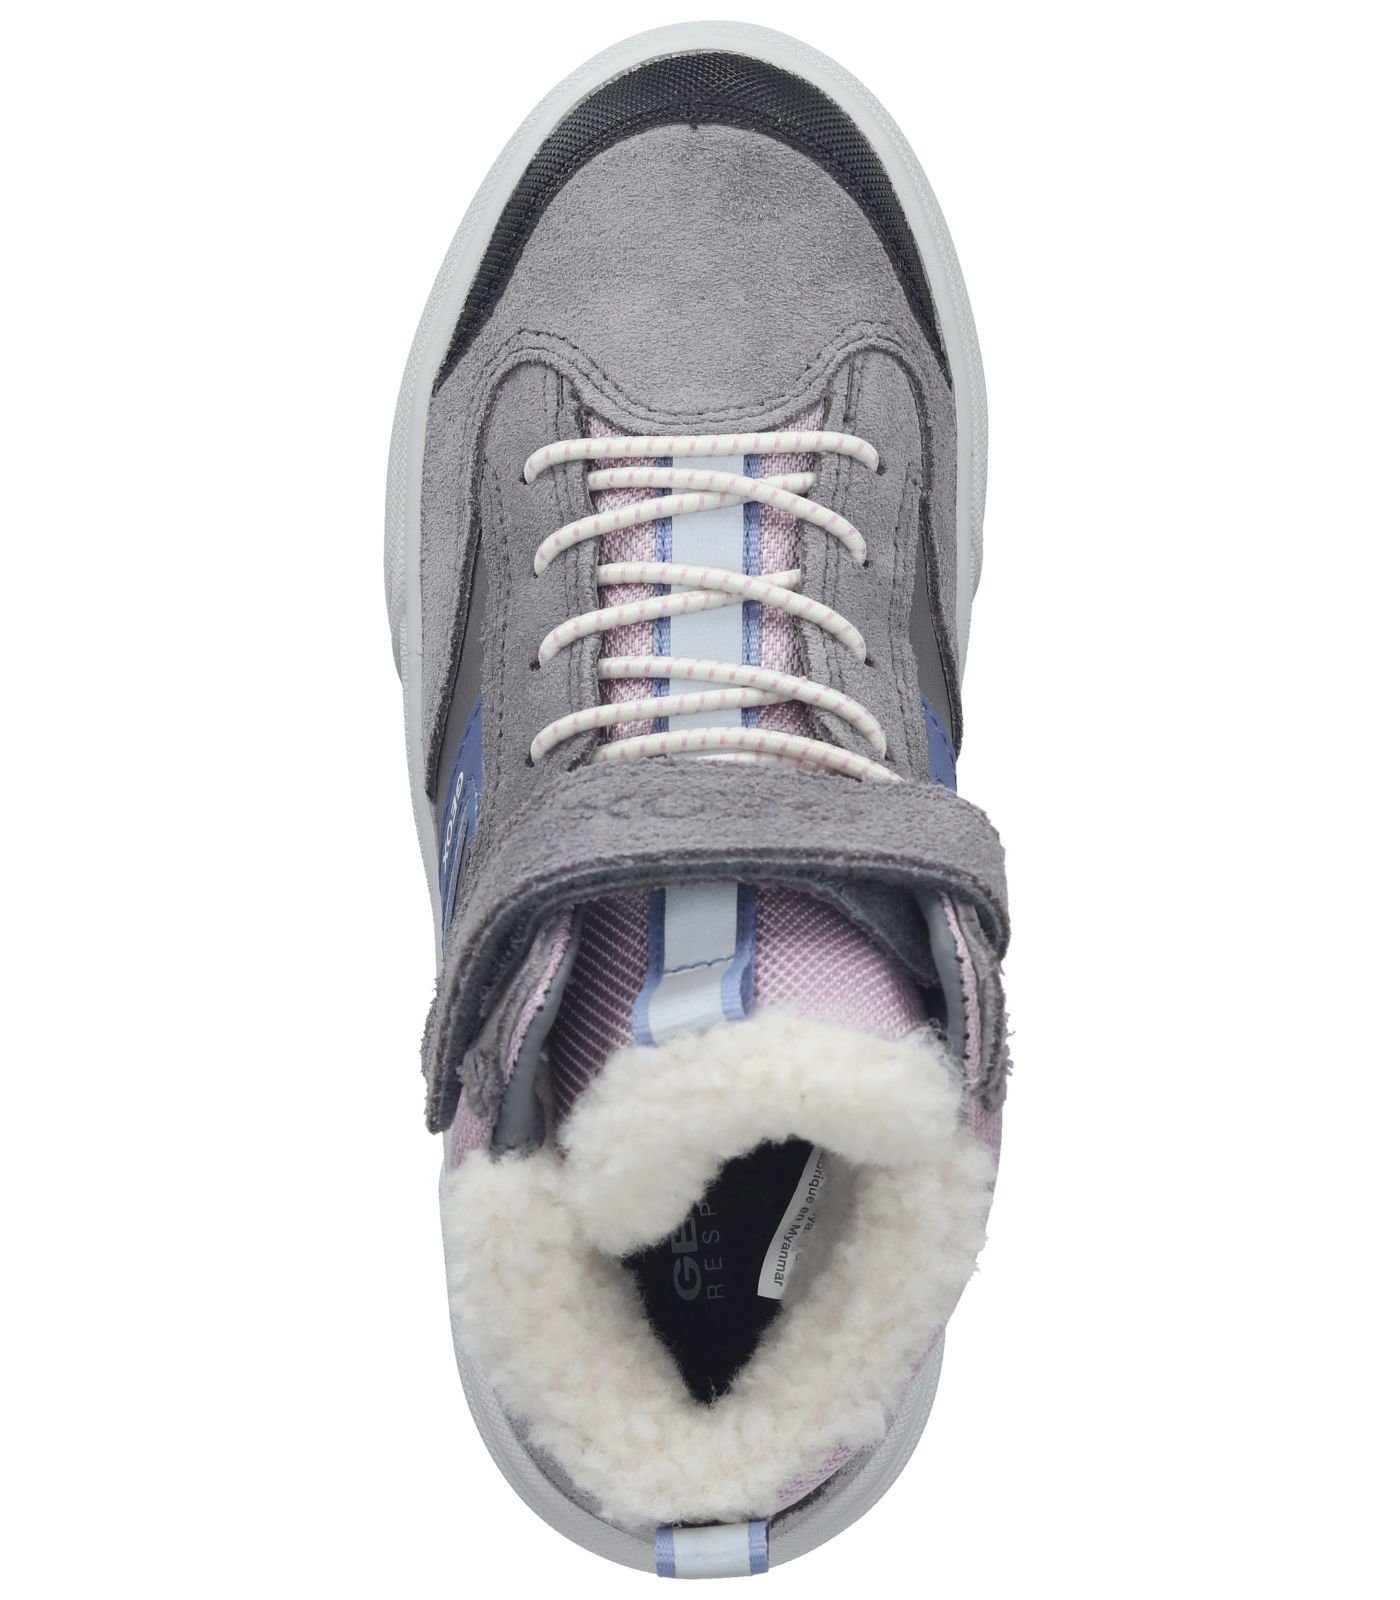 Leder/Textil Geox Grau Sneaker Sneaker Pink